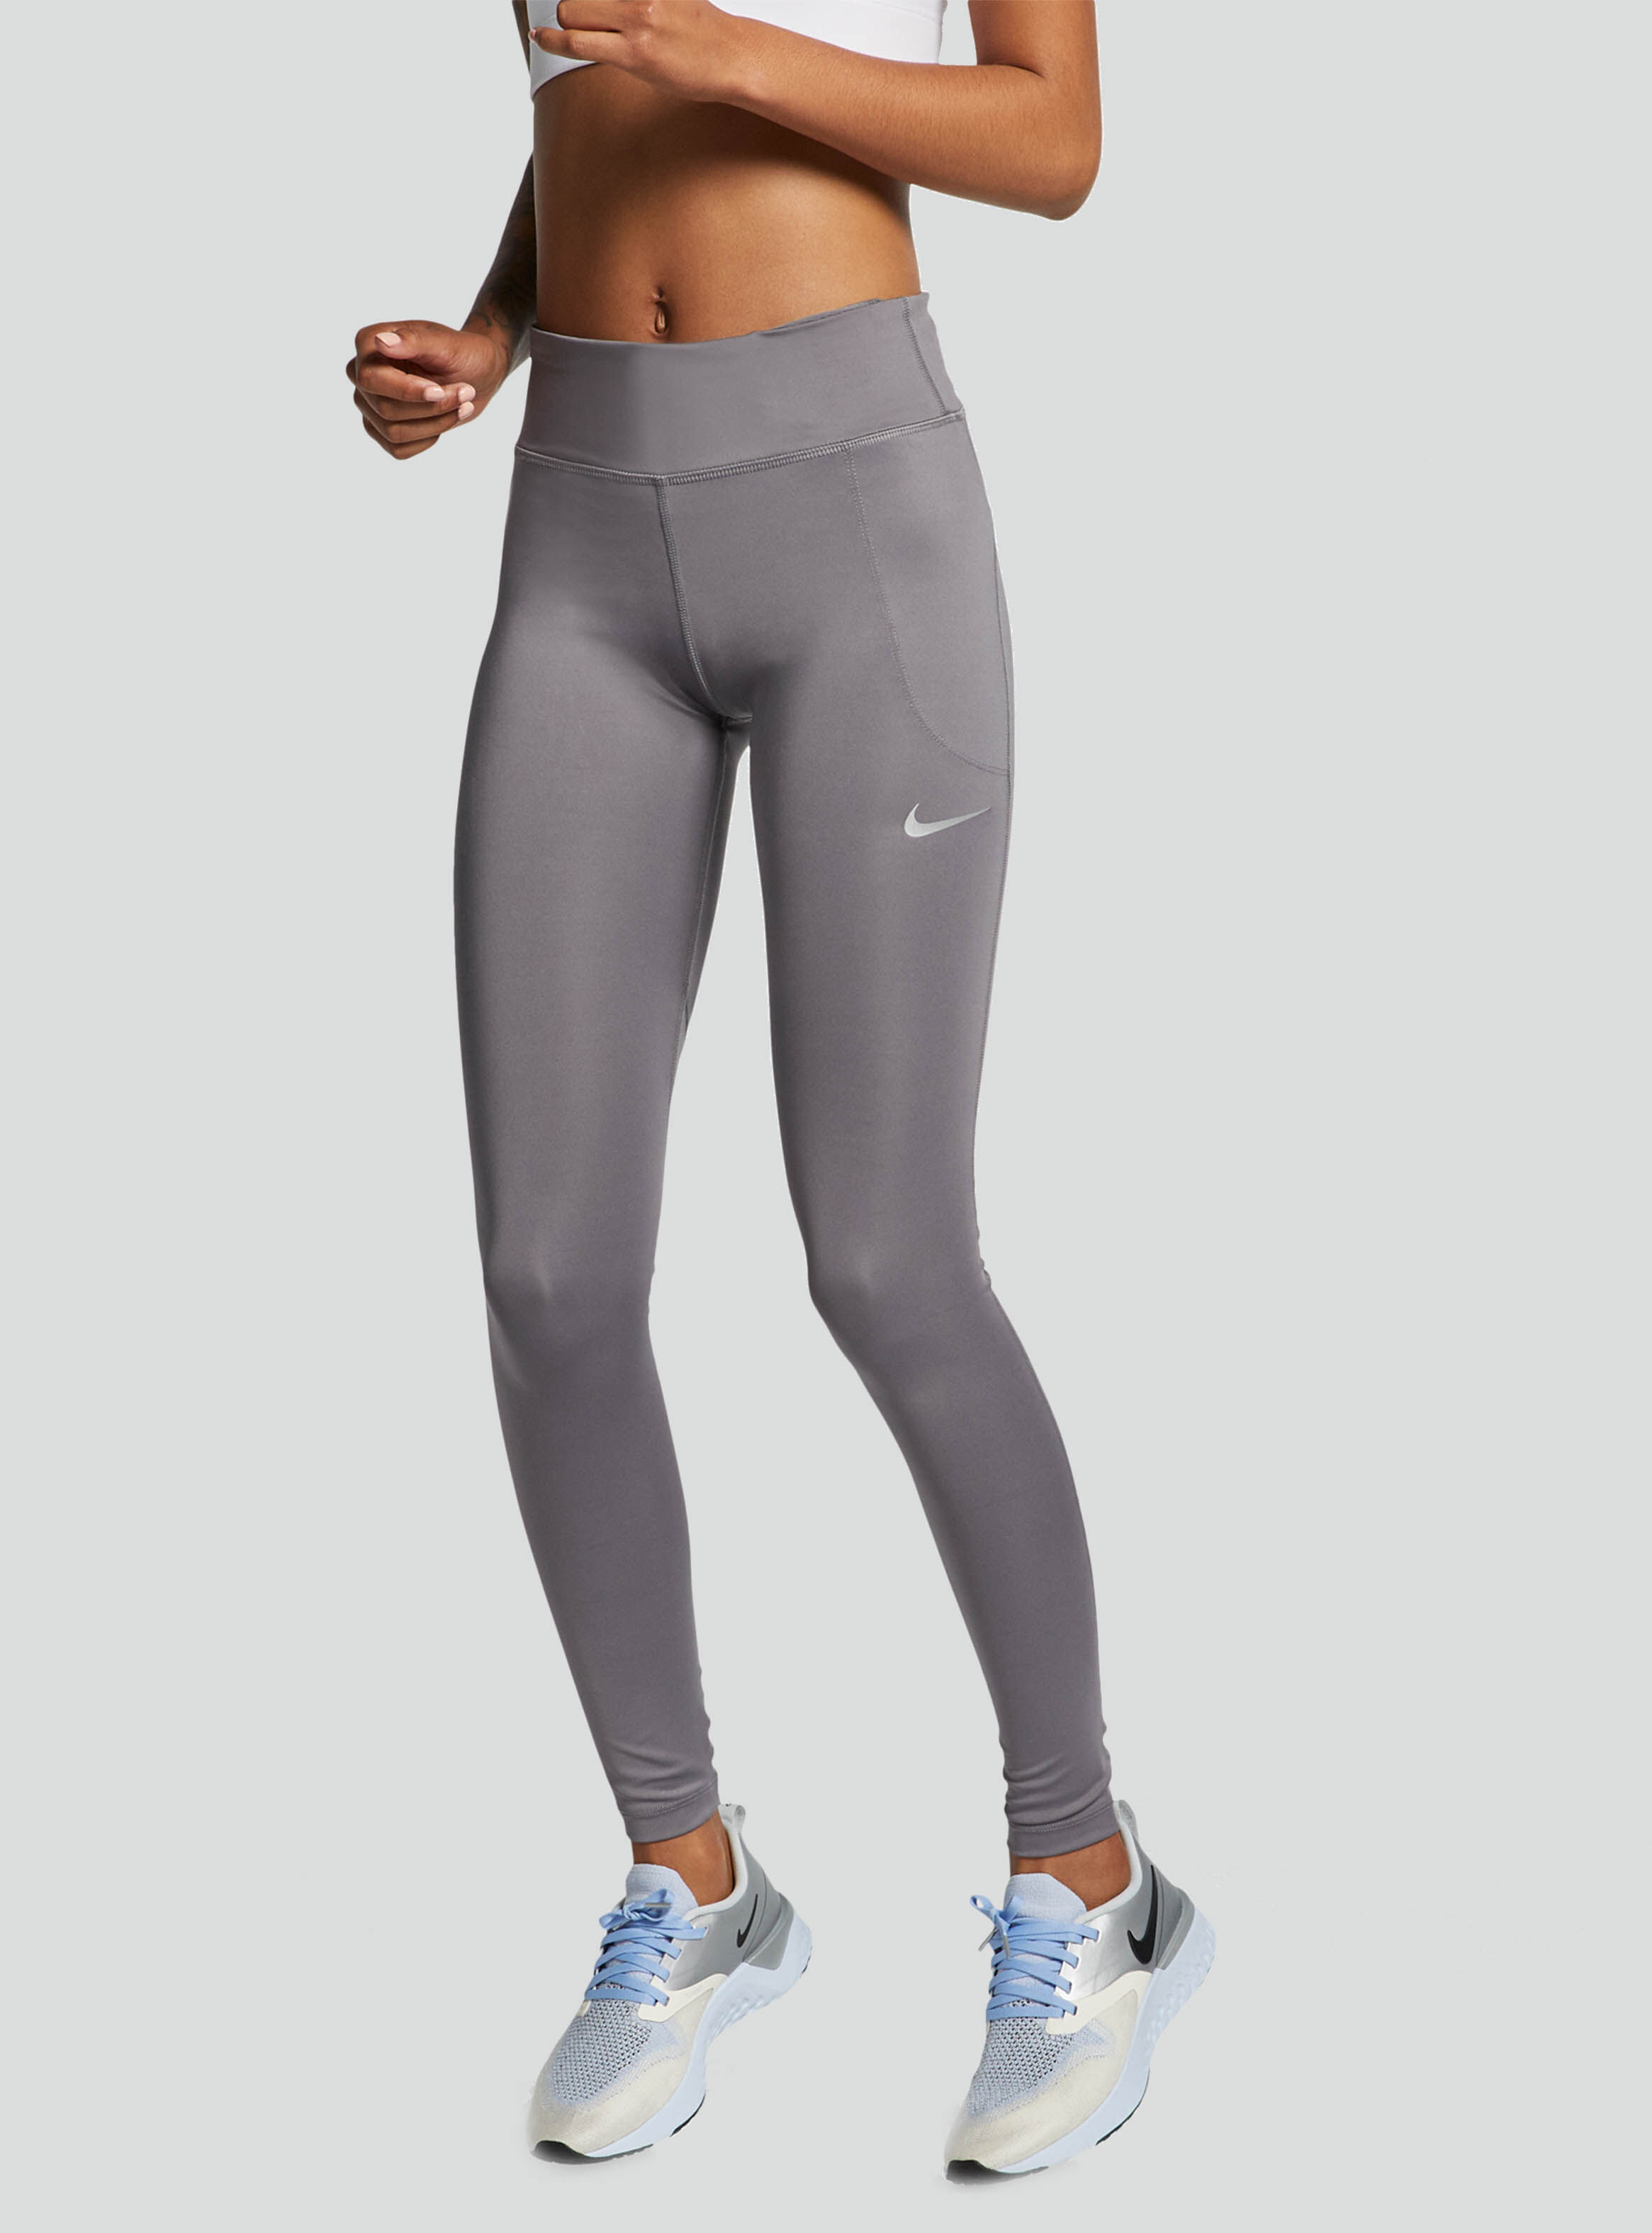 Calza Nike Running Tights Mujer